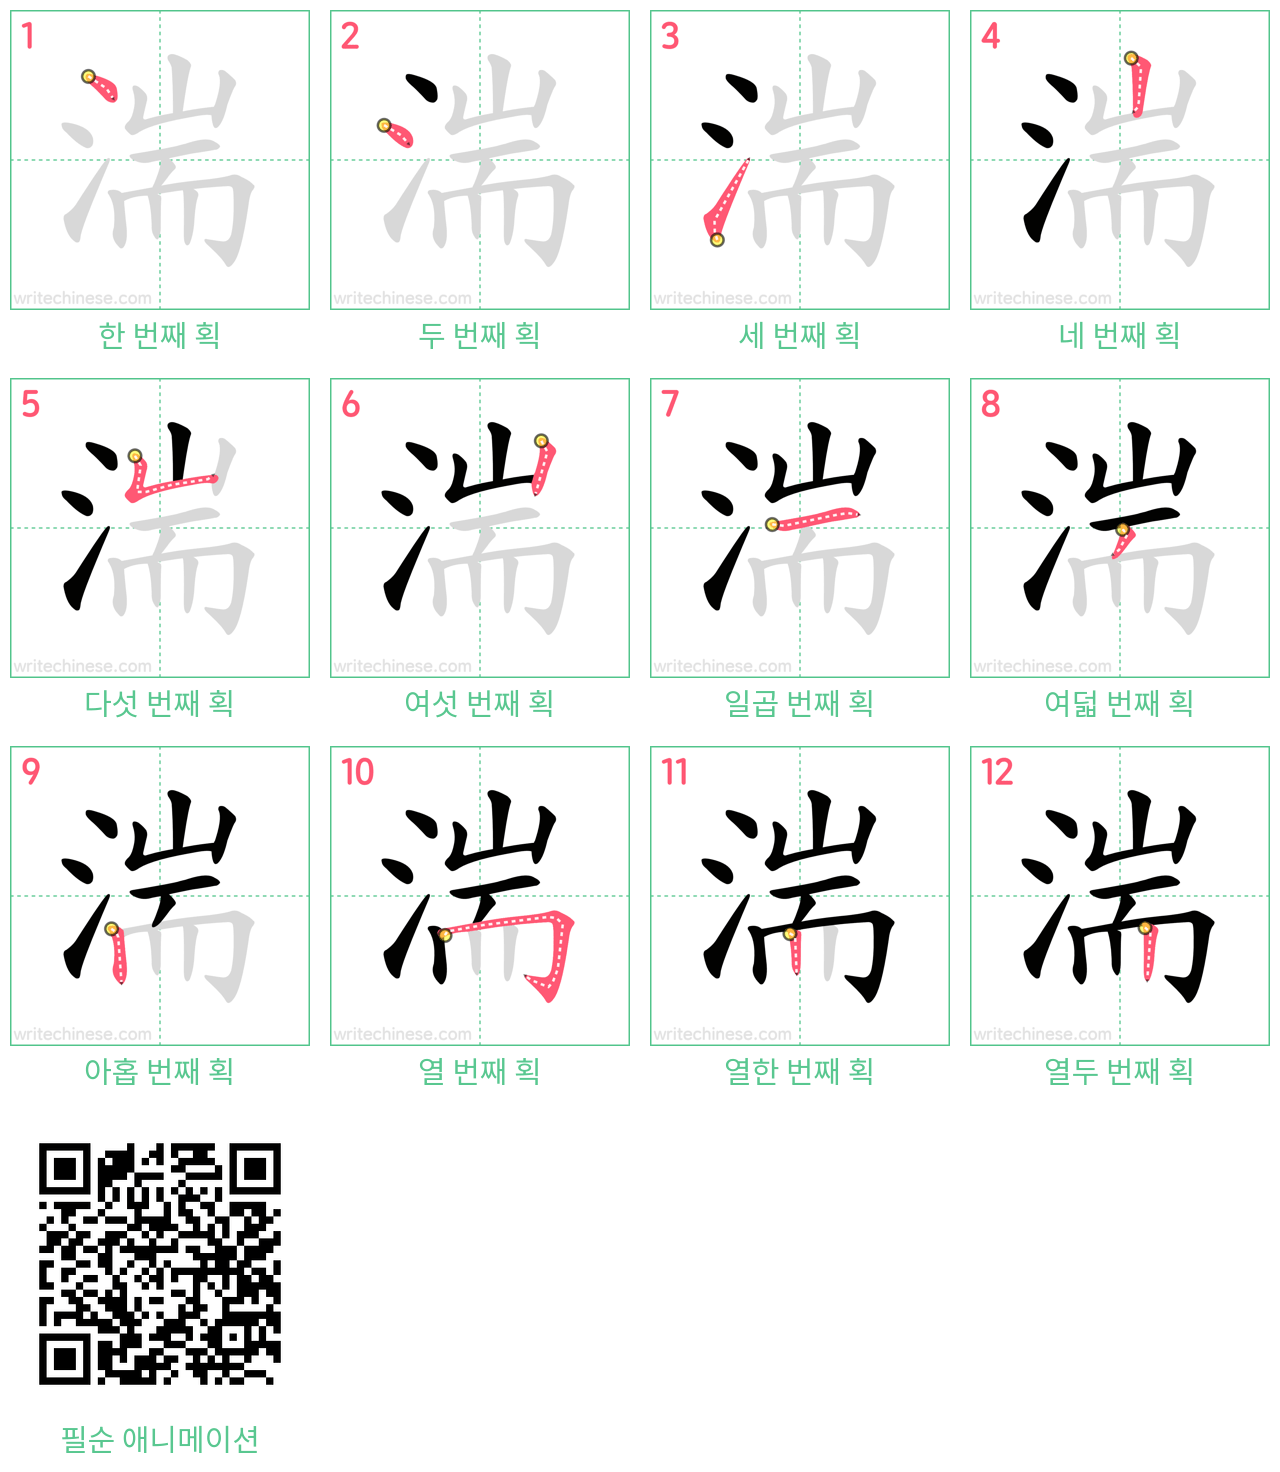 湍 step-by-step stroke order diagrams